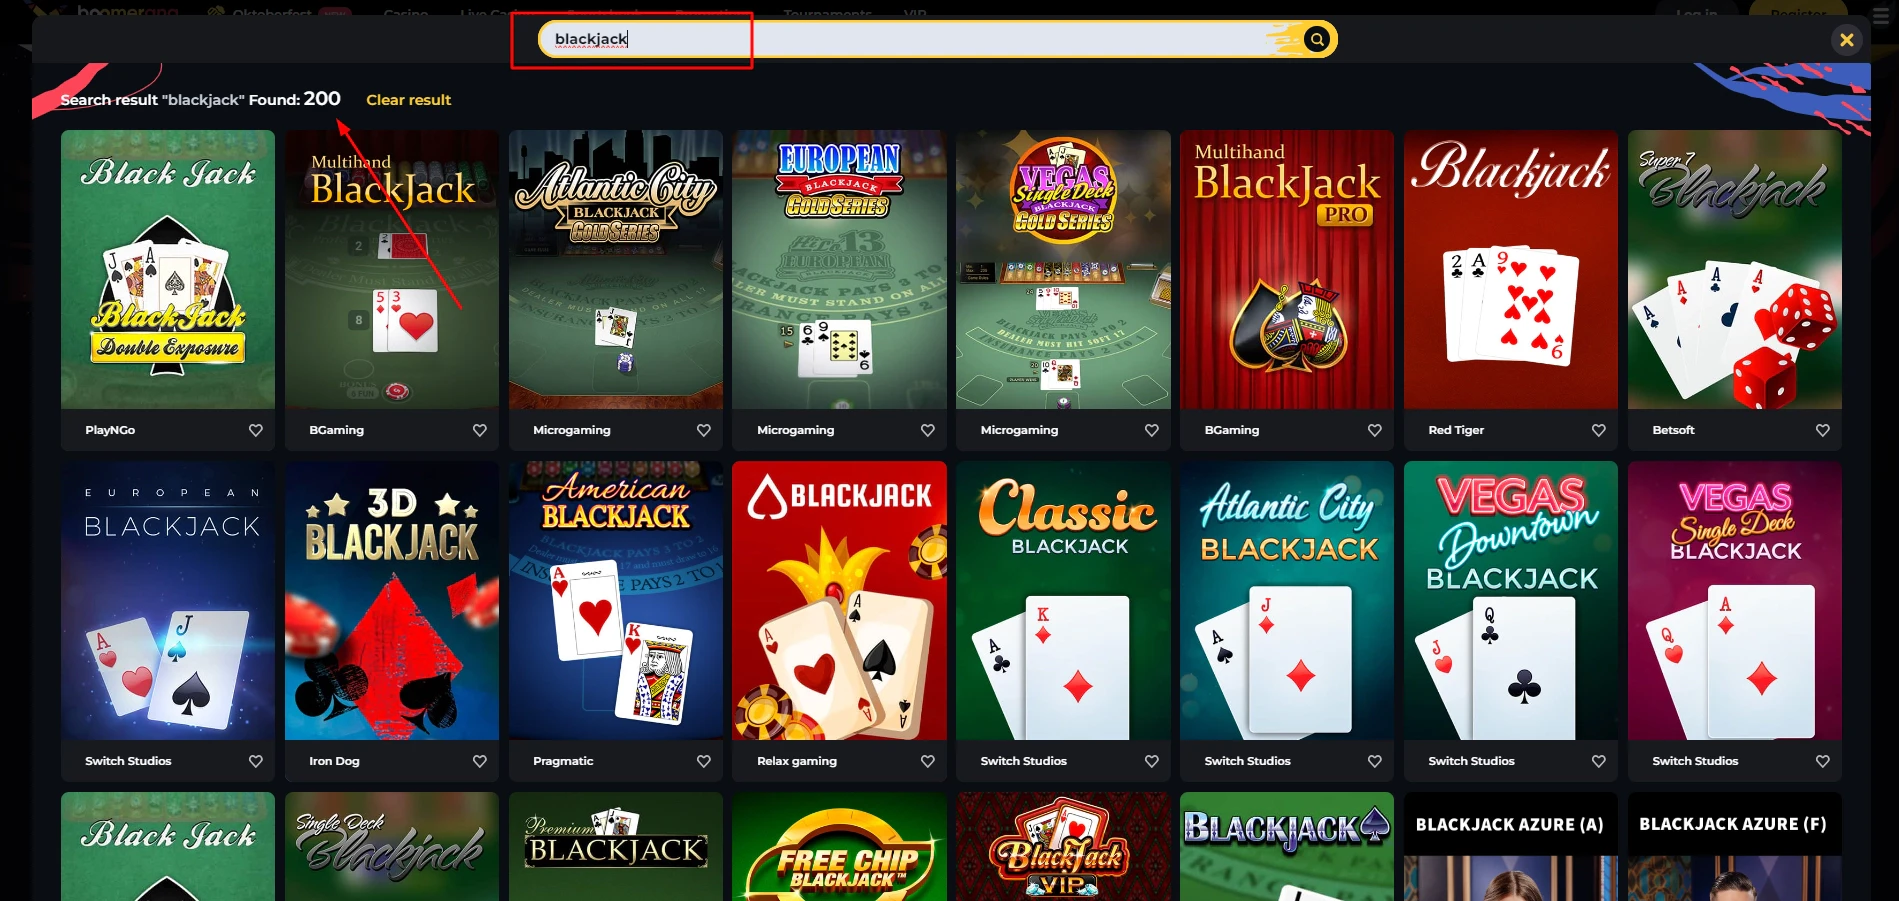 Le blackjack est très présent sur Boomerang Casino